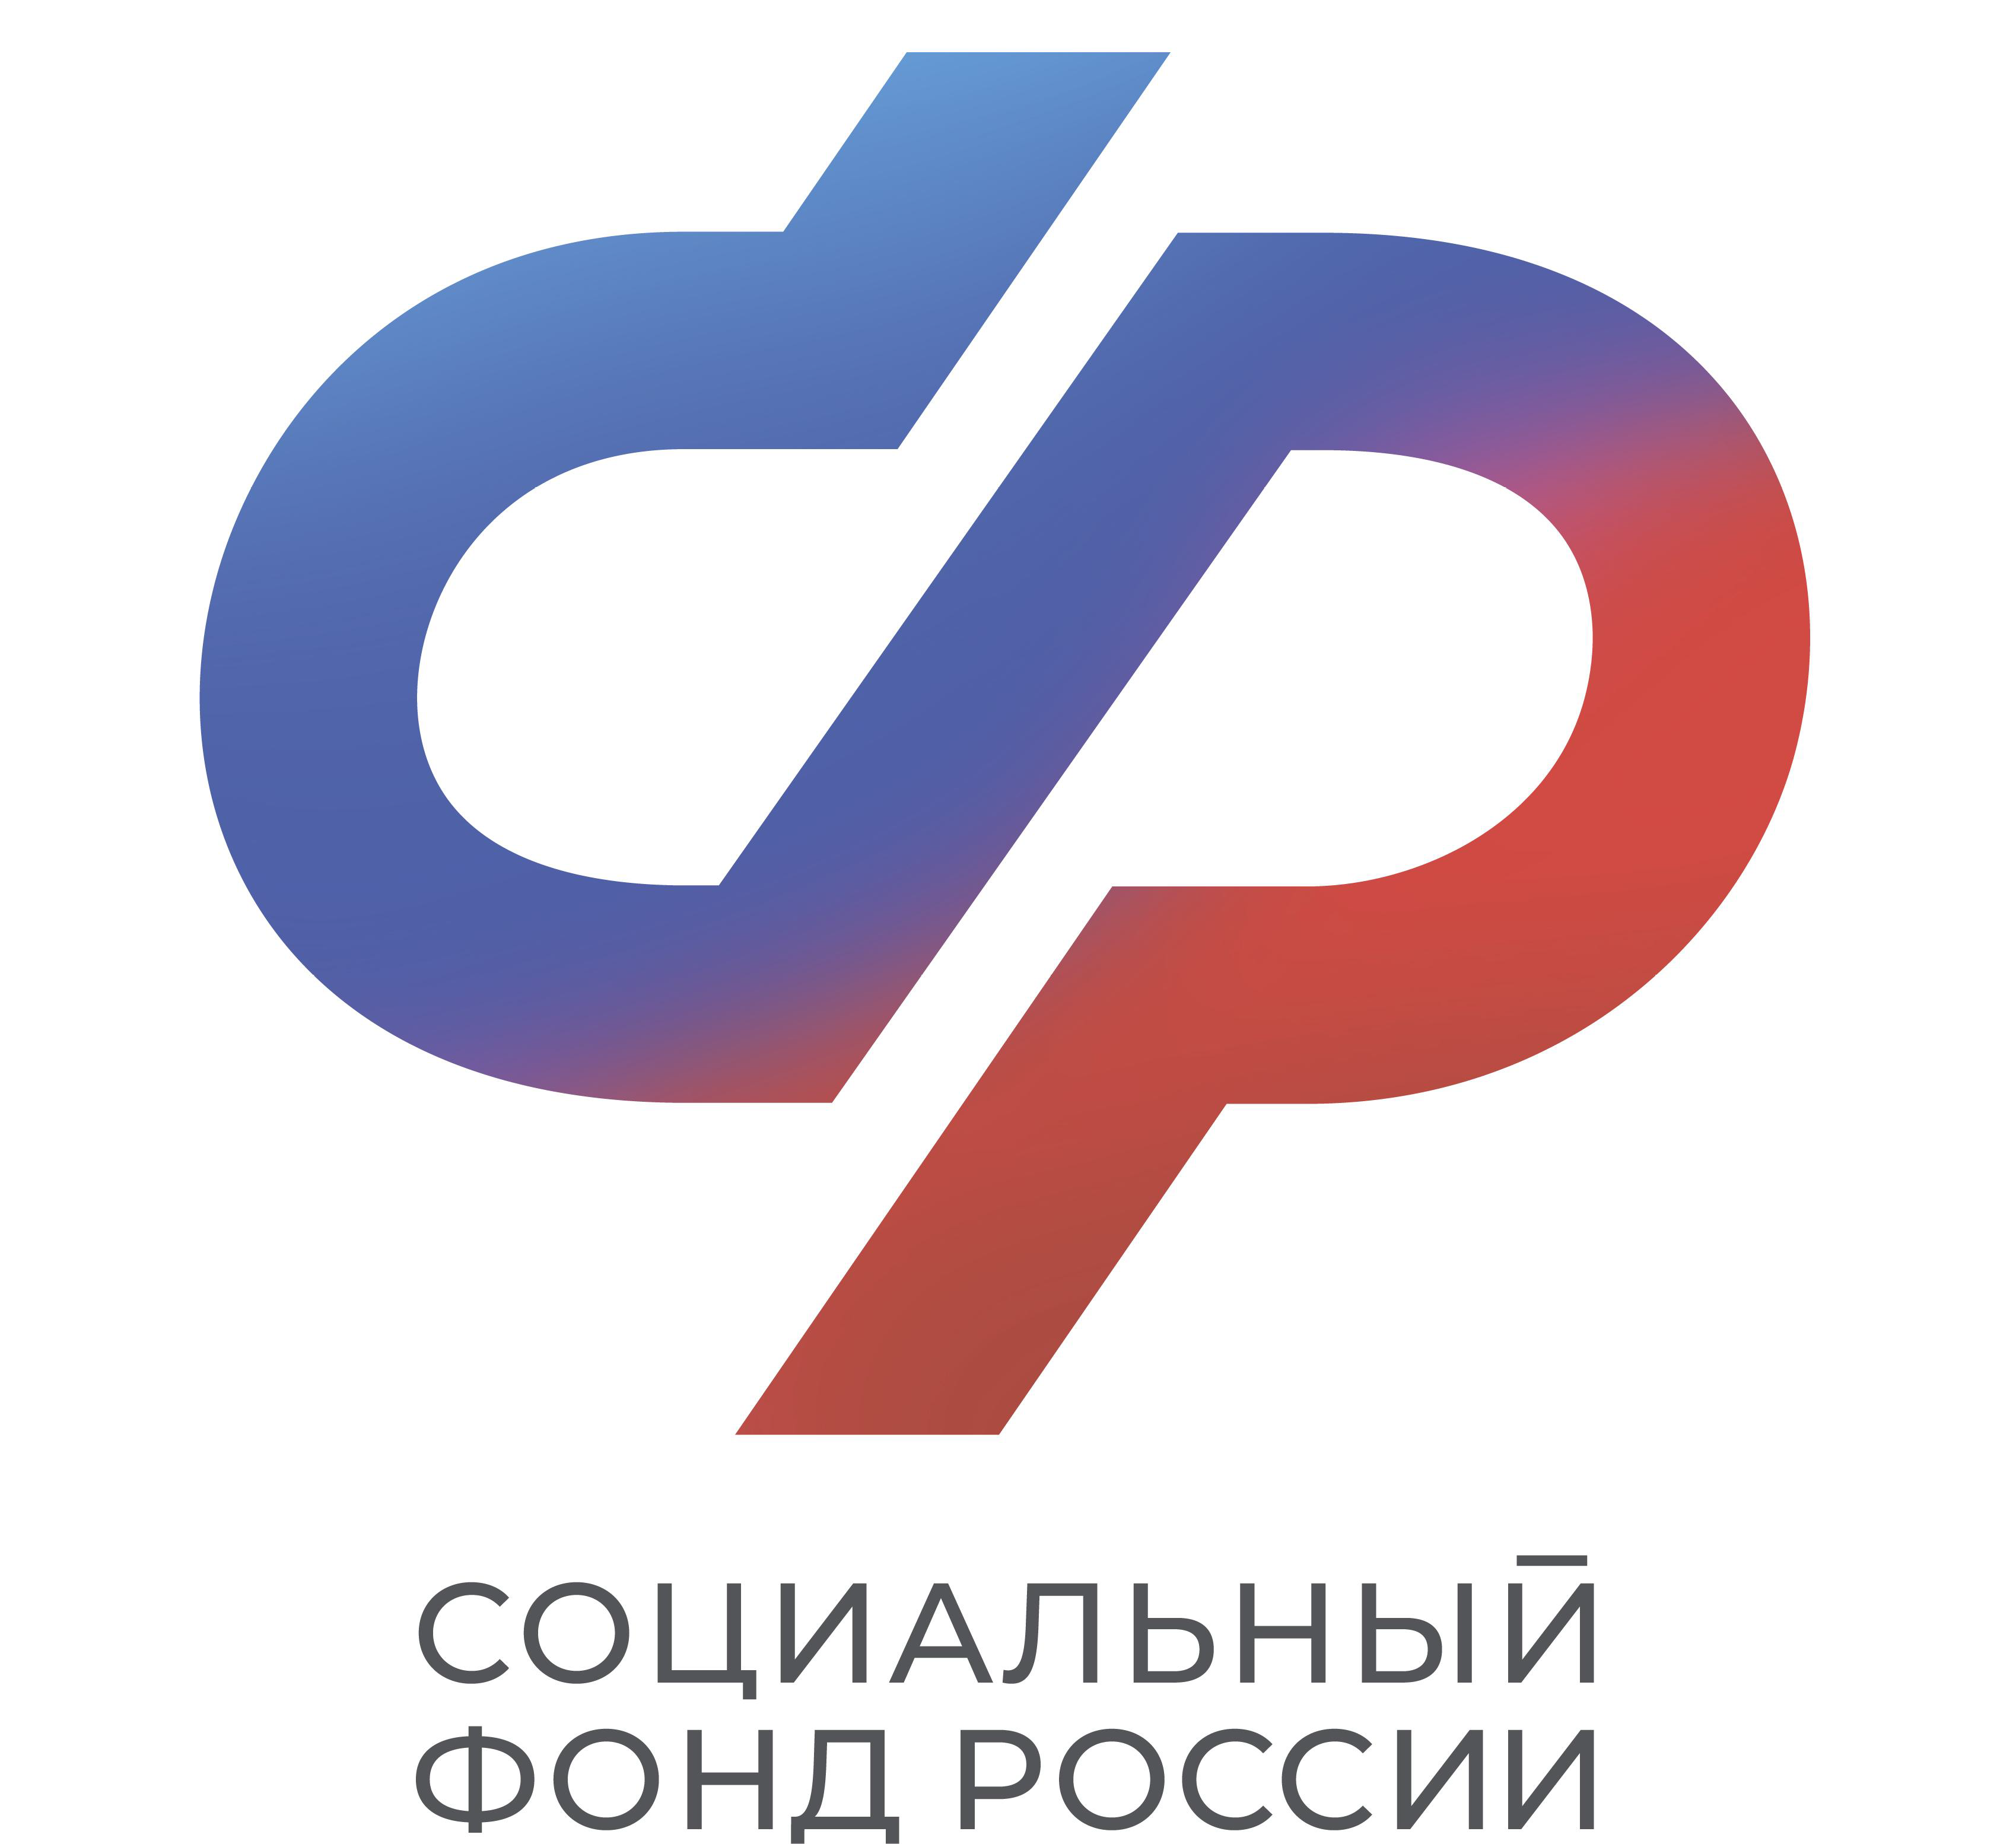 10,4 тысячи жителей СПб и ЛО приобрели технические средства реабилитации с помощью электронного сертификата 